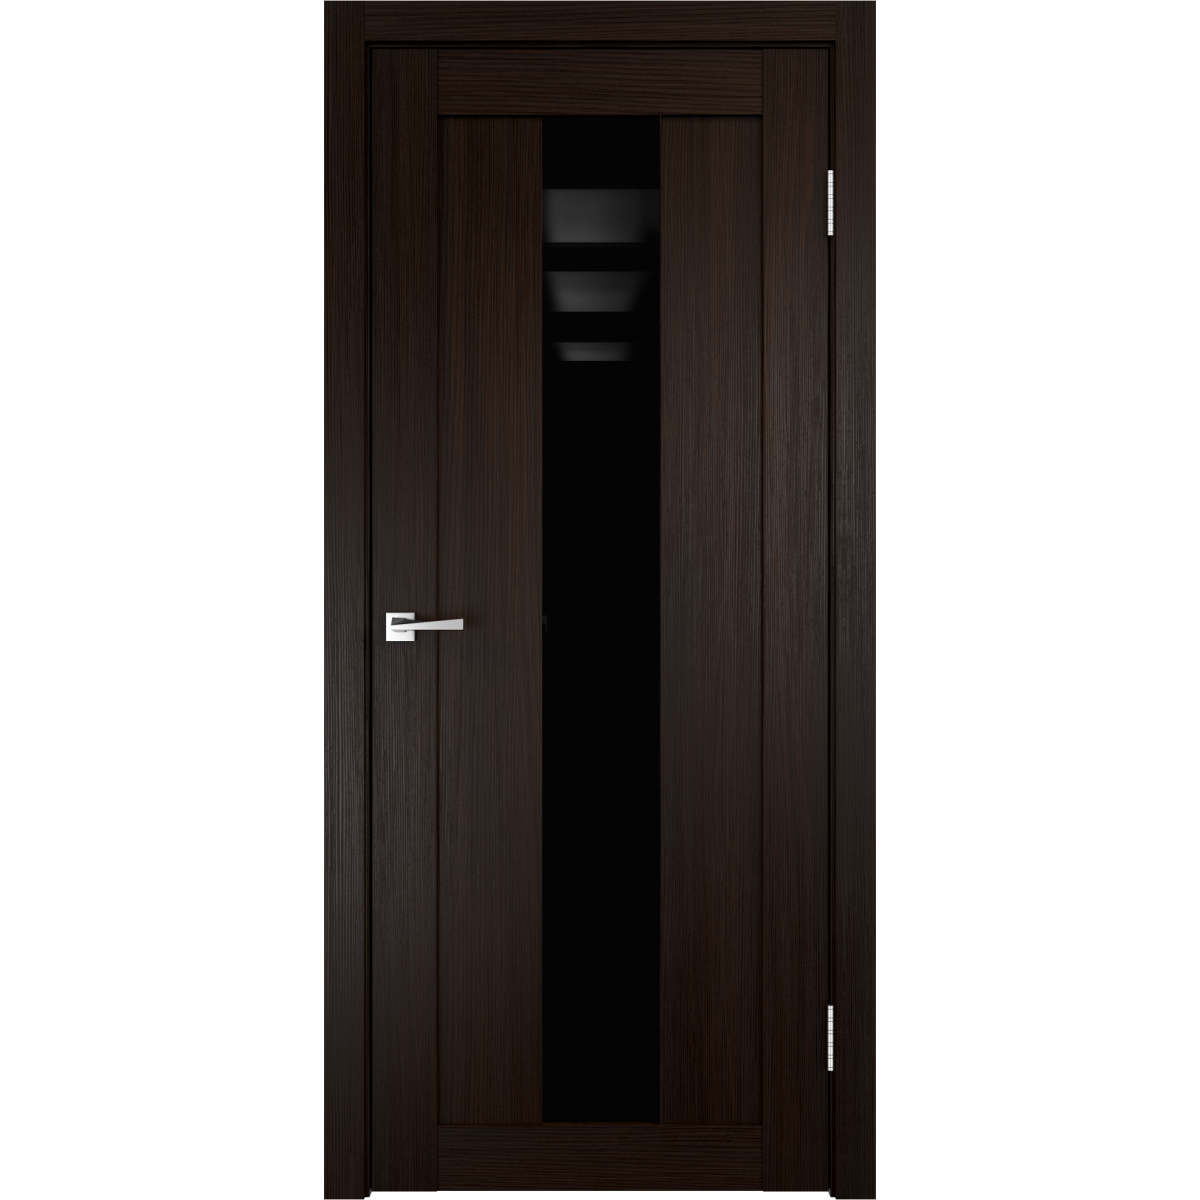 Дверь межкомнатная остеклённая Фортуна 70x200 см, ПВХ, цвет венге